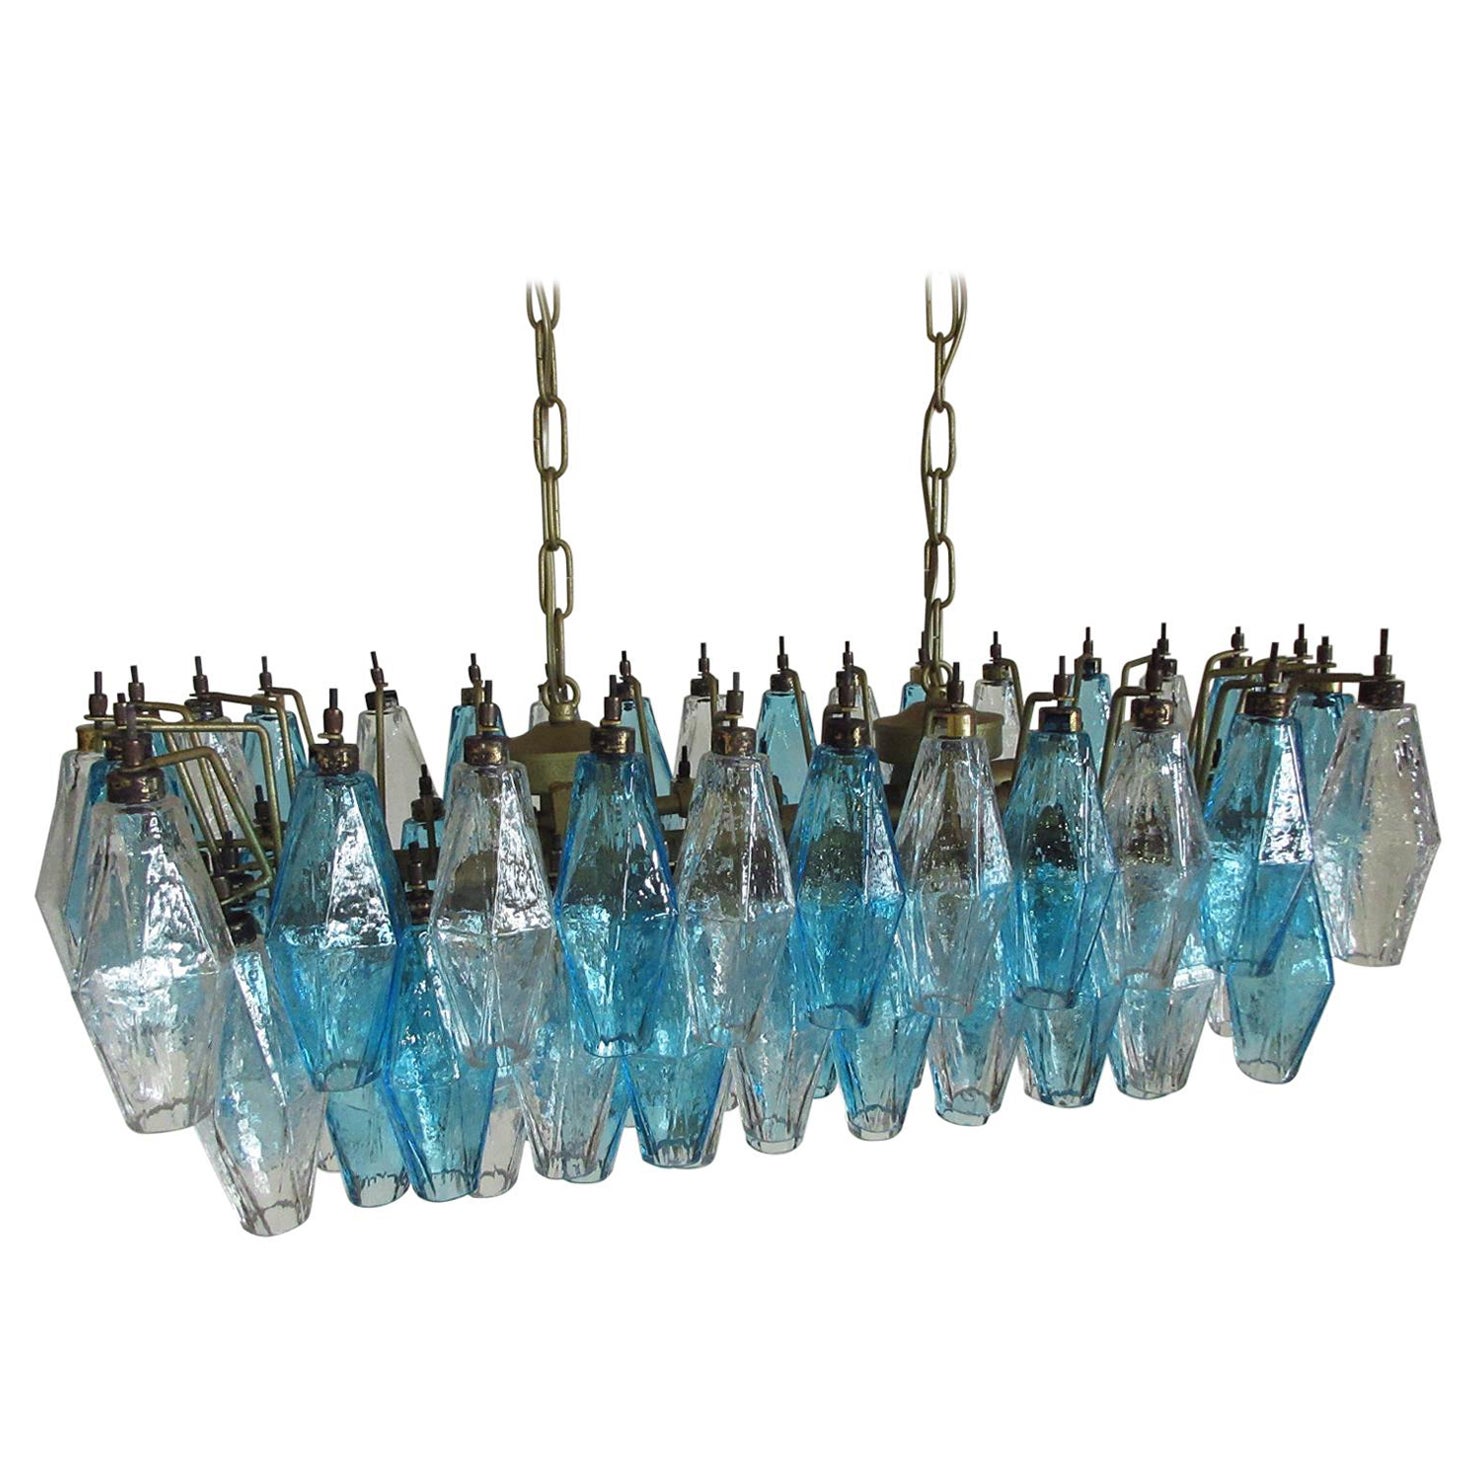 Élégant lustre Poliedri de Murano, Carlo Scarpa, 84 verres transparents et bleus